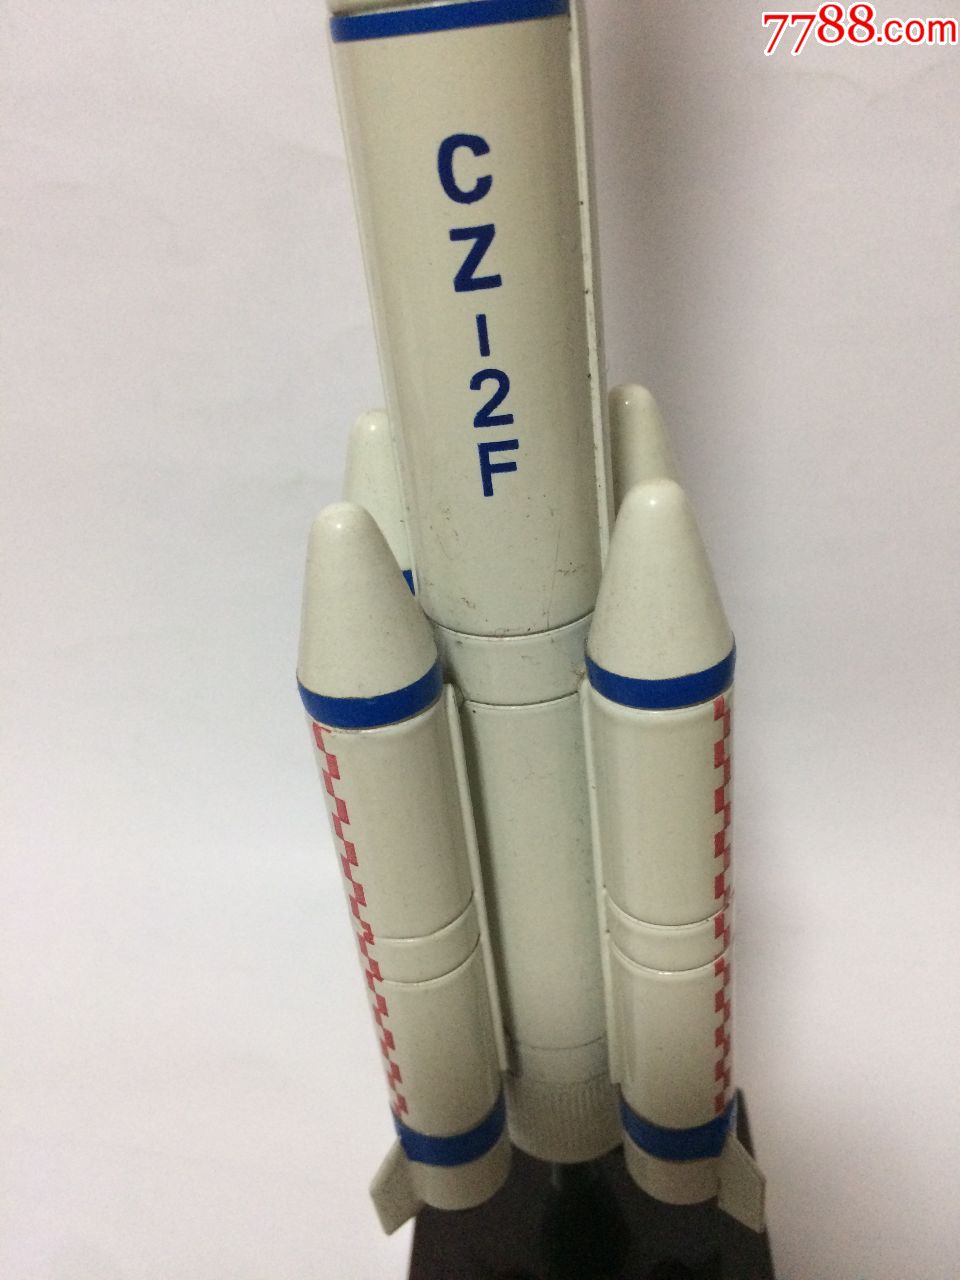 发射神舟载人飞船火箭纪念模型